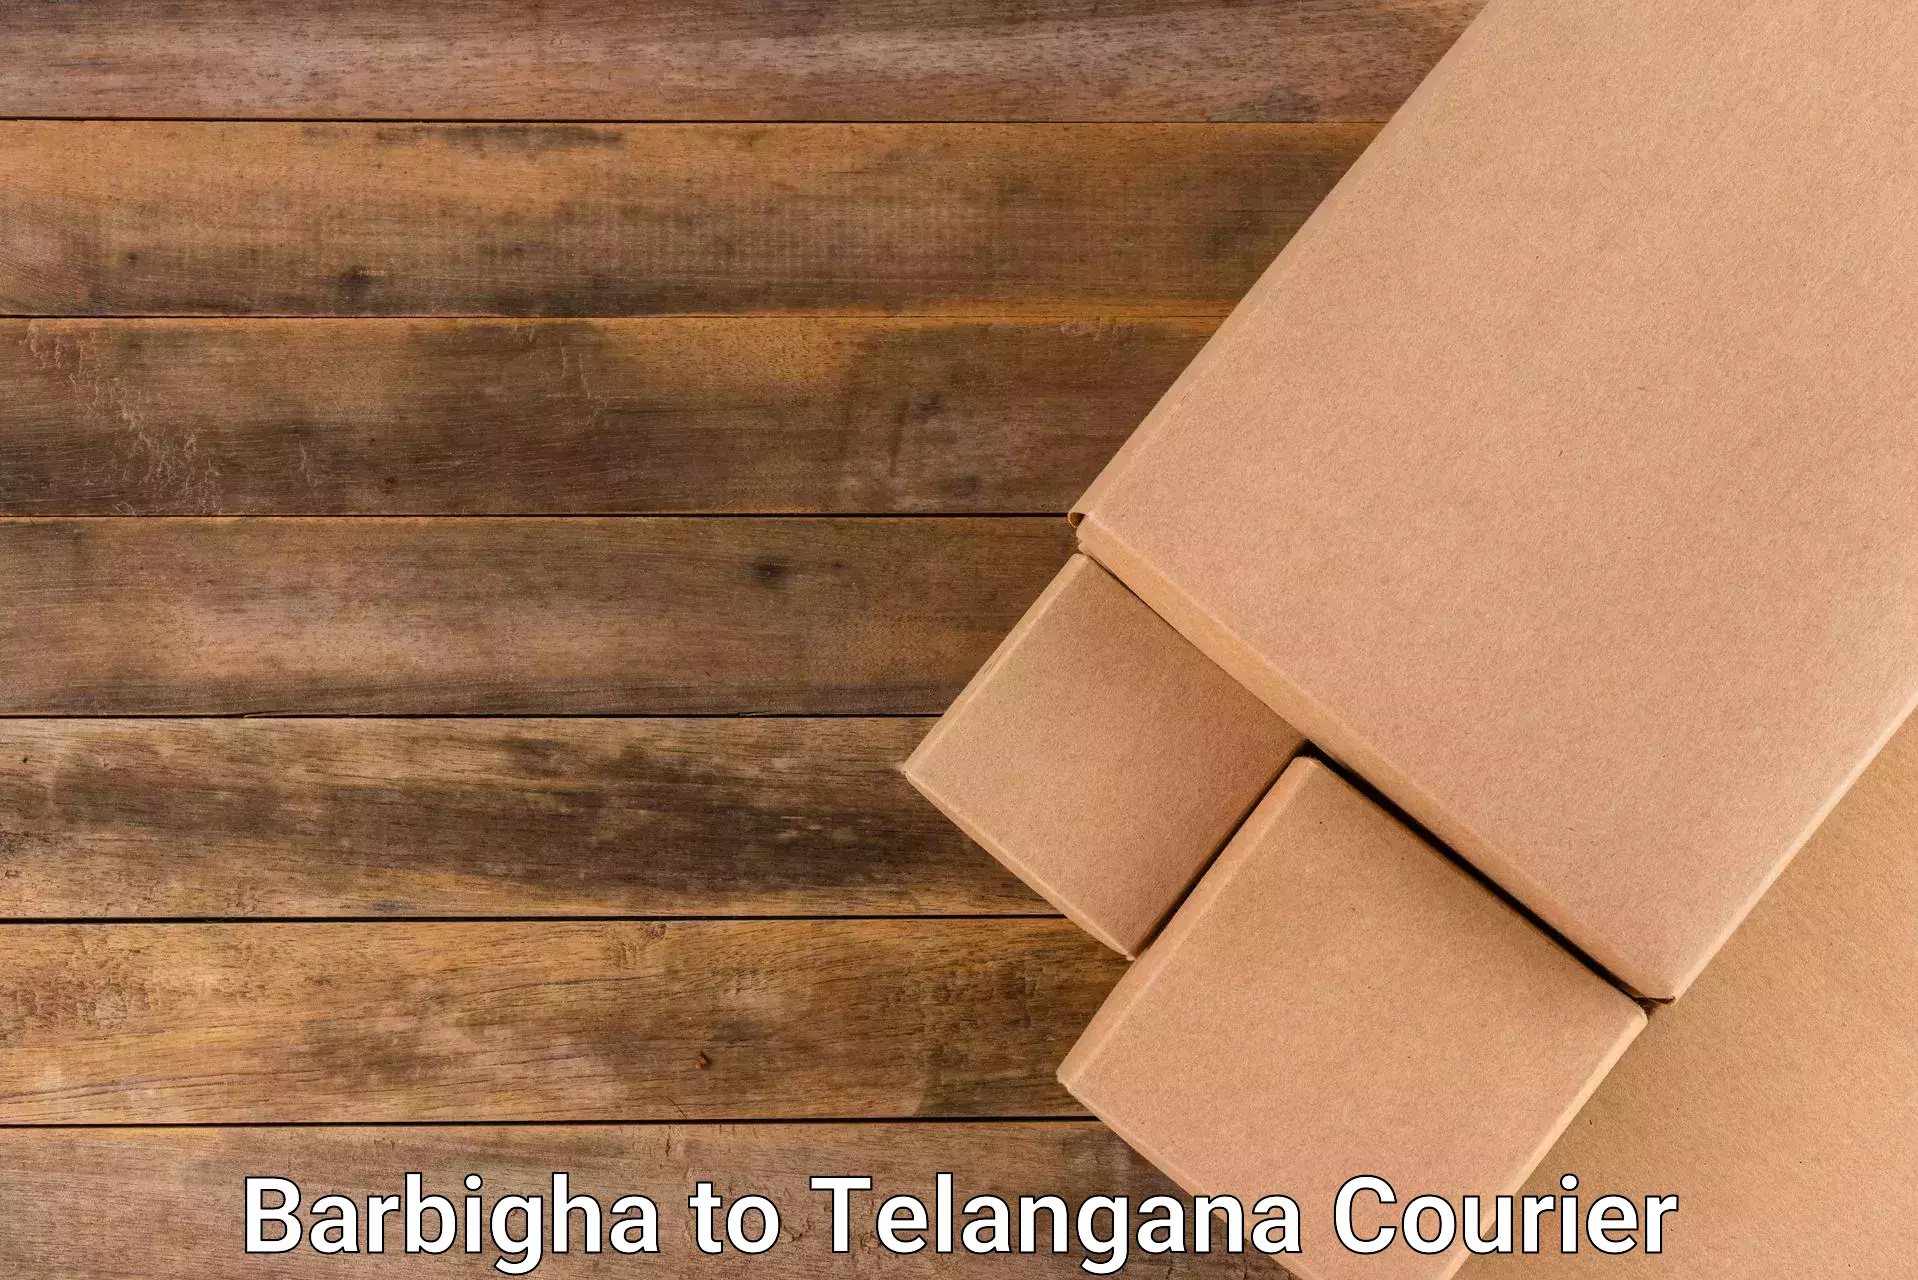 Urgent courier needs Barbigha to Telangana